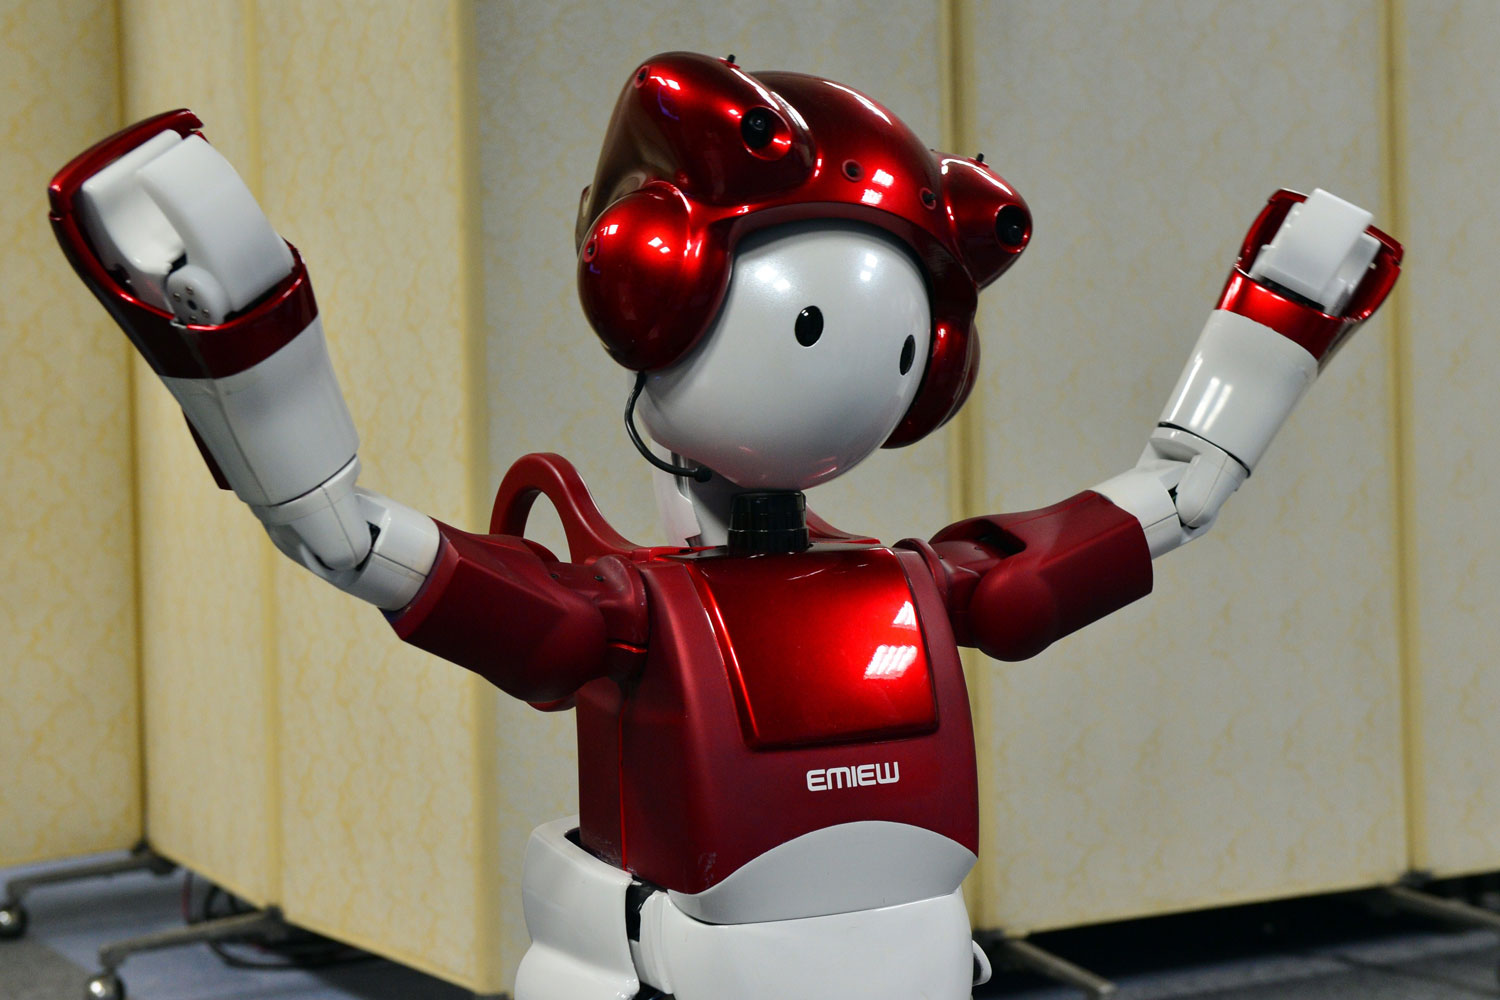 Emiews 2 un robot humanoide capaz de mantener una conversación sin guión